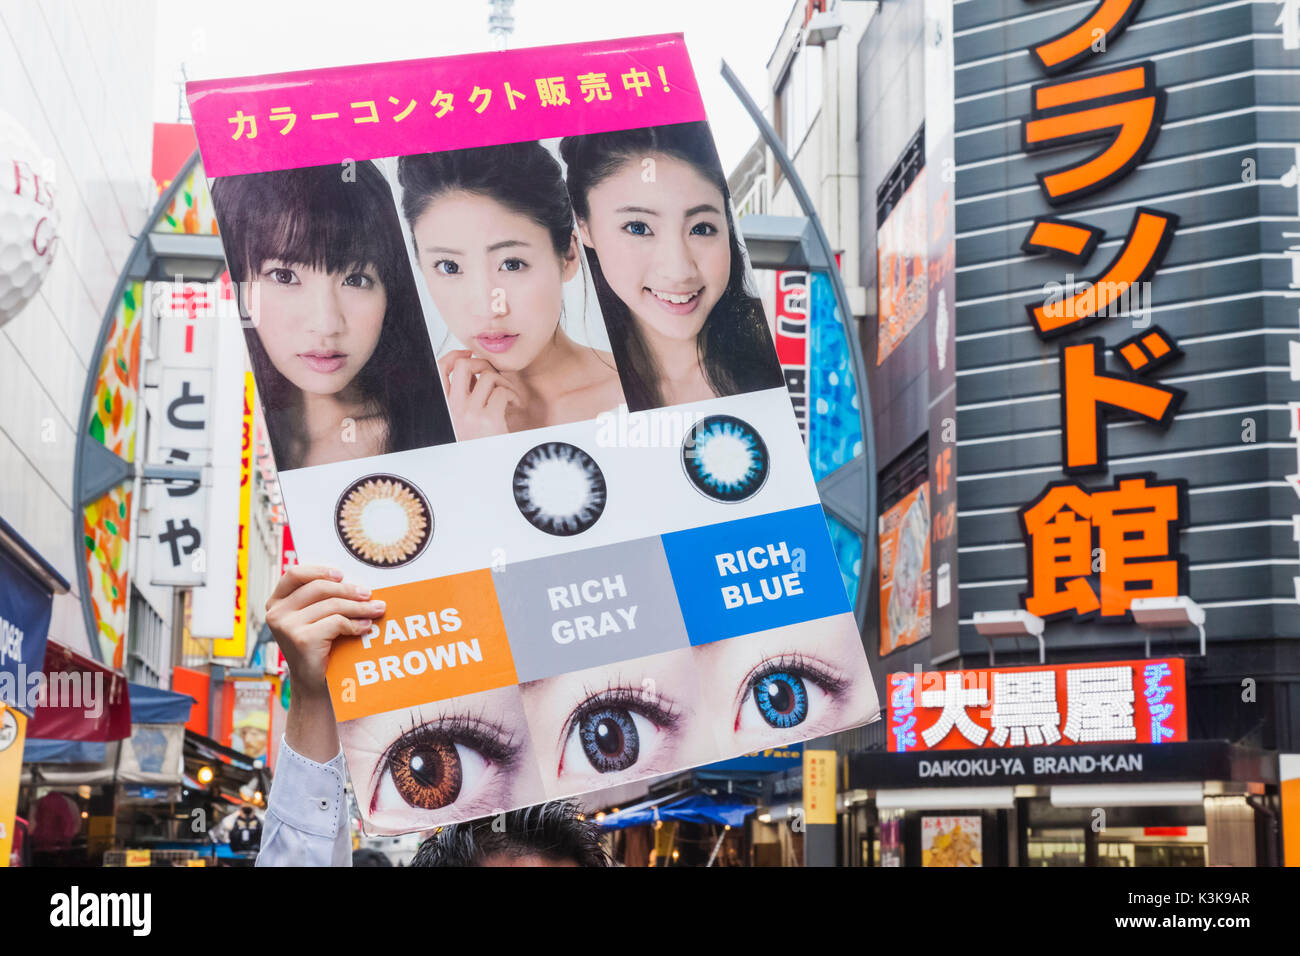 Japon, Tokyo, Ueno, Hoshu Ameyoko, rue Commerçante, Man Holding panneau publicitaire pour les lentilles de contact Banque D'Images